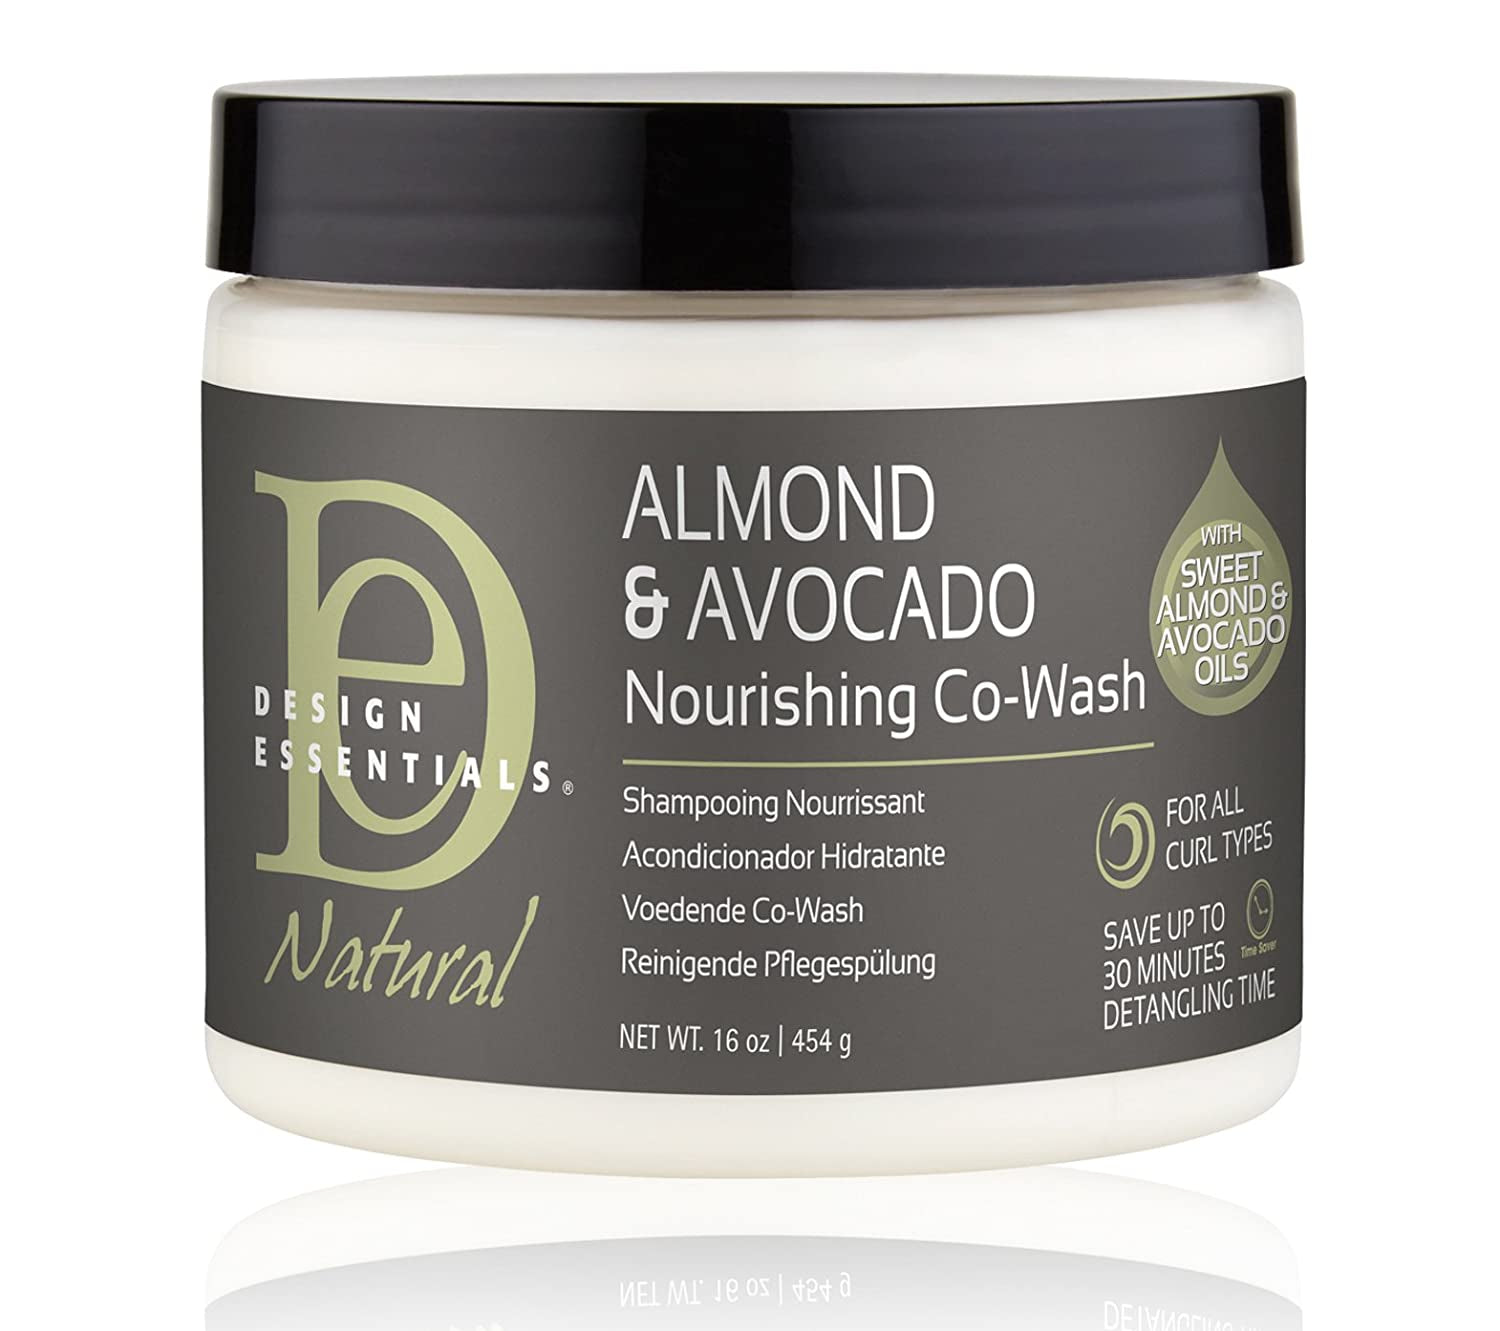 Design Essentials Almond Avocado Daily Moisture Lotion 6 oz